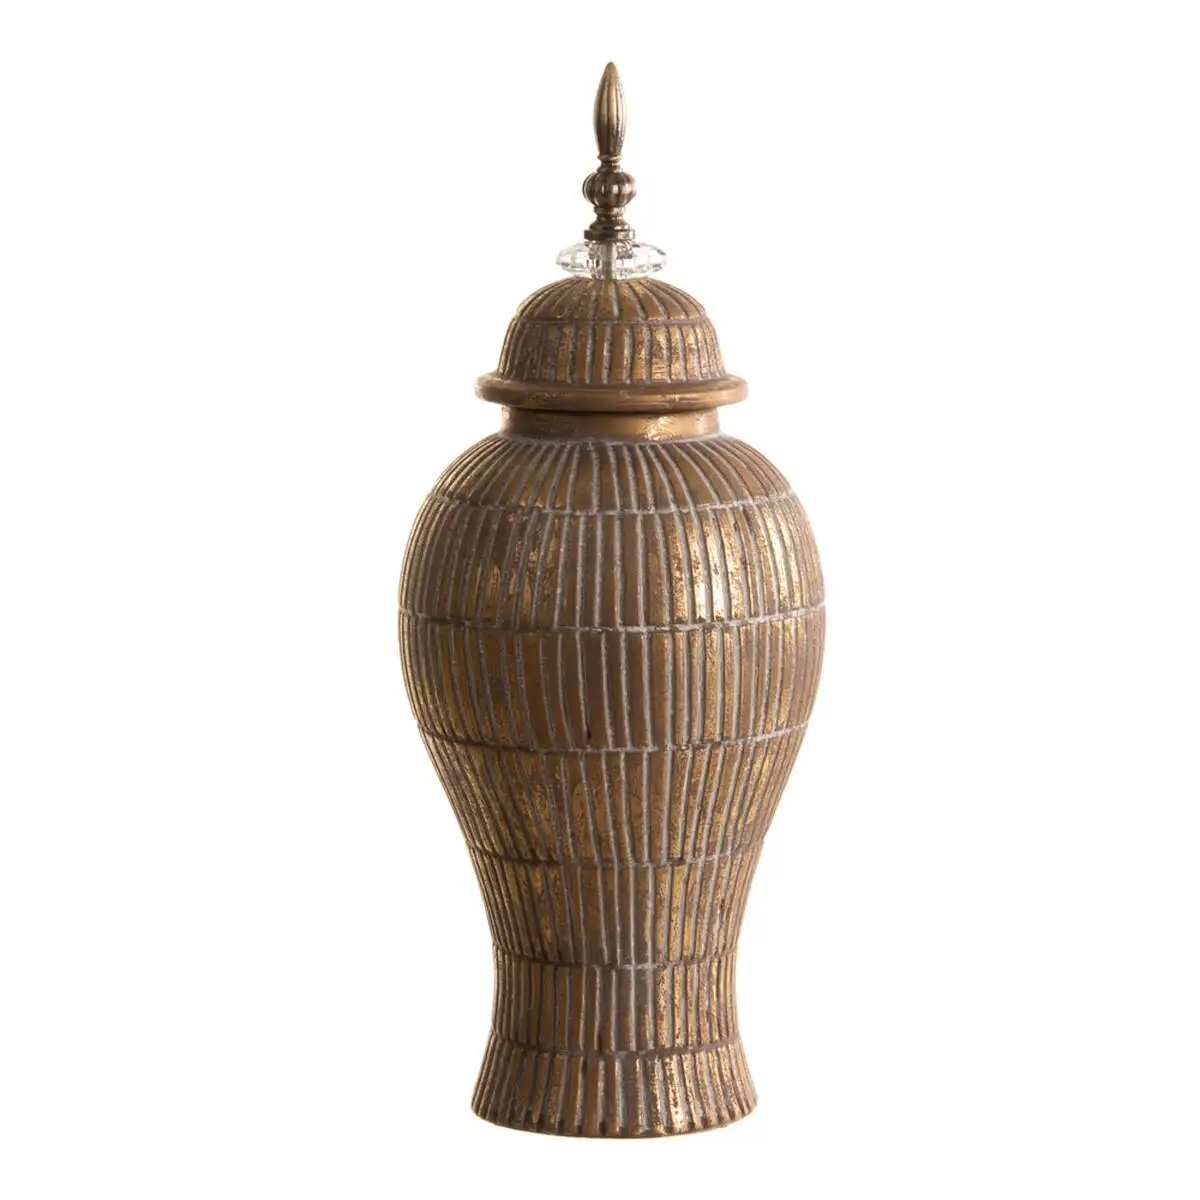 Vase 19 x 19 x 43 cm ceramique dore blanc_5466. Bienvenue sur DIAYTAR SENEGAL - Où Choisir Rime avec Qualité. Explorez notre gamme diversifiée et découvrez des articles conçus pour répondre à vos attentes élevées.